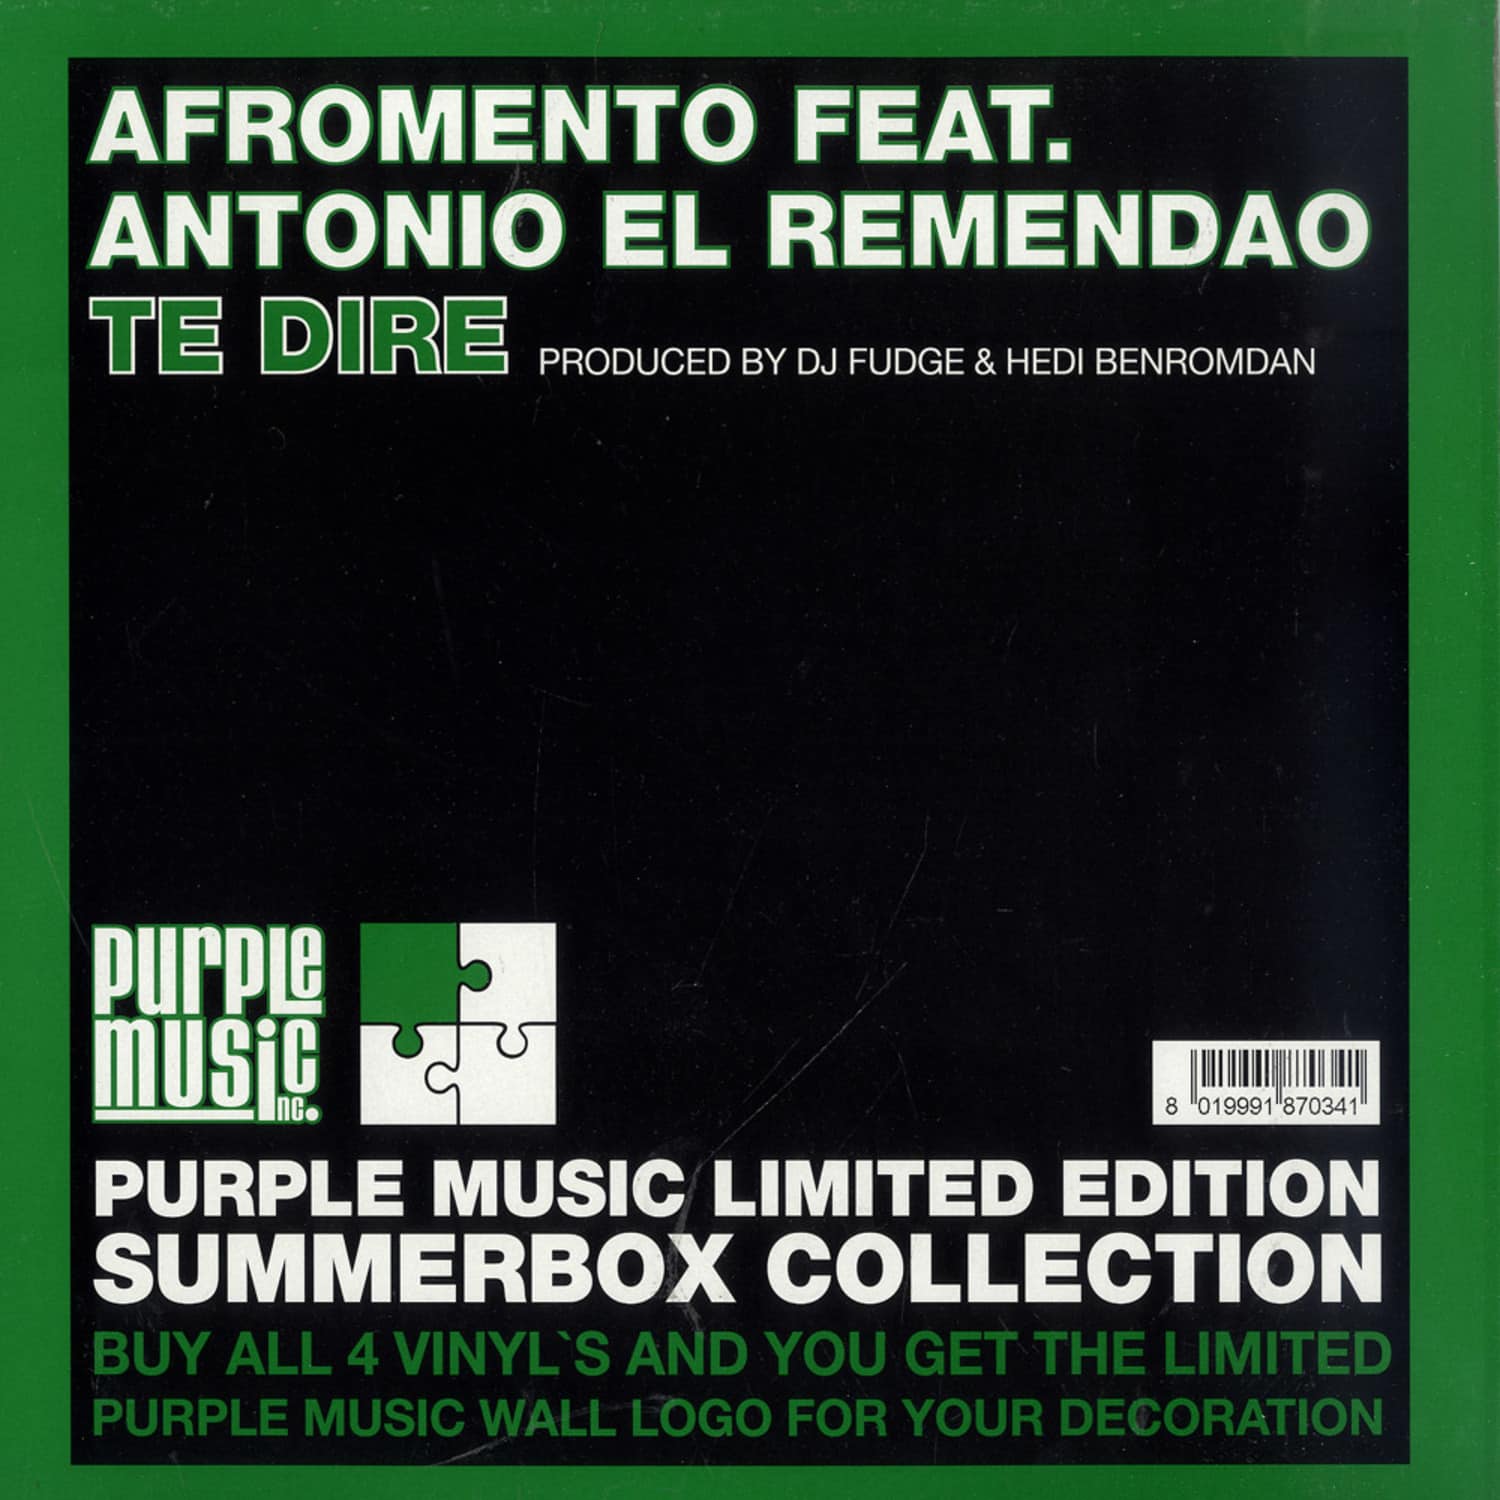 Afromento Feat Antonio El Remendao - TE DIRE